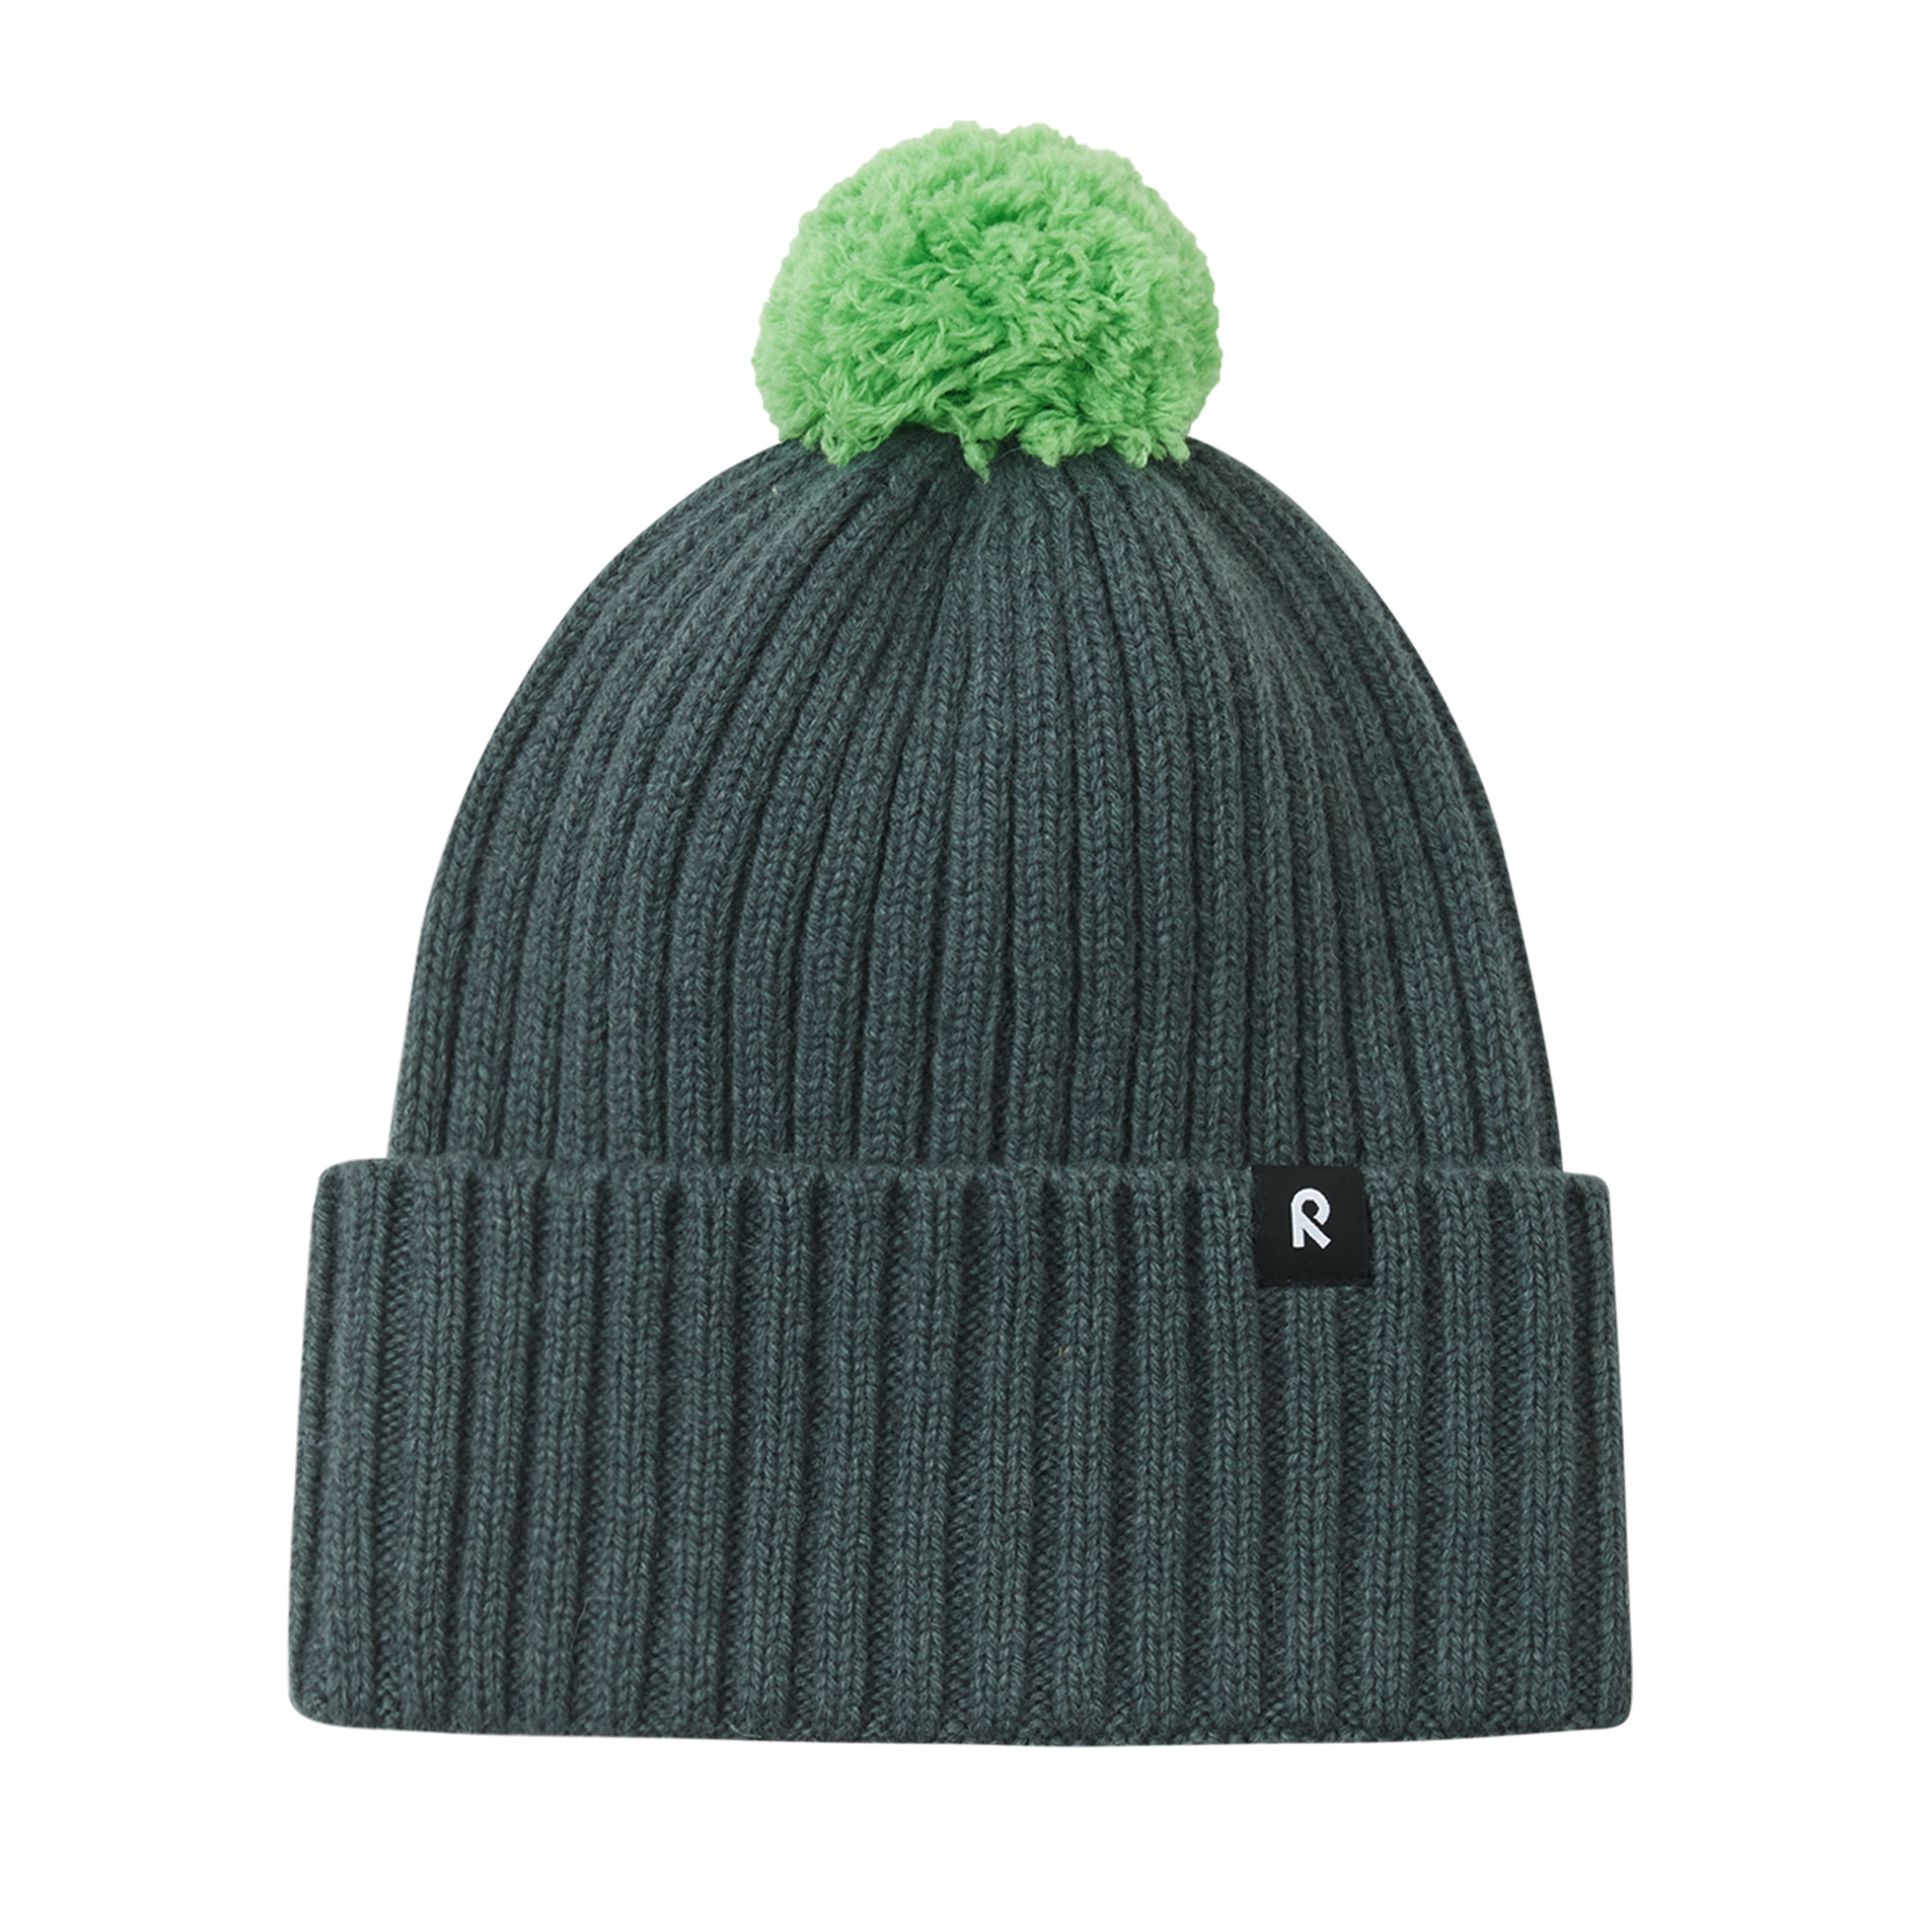 Dziecięca czapka zimowa Reima Topsu thyme green - 48/50 cm